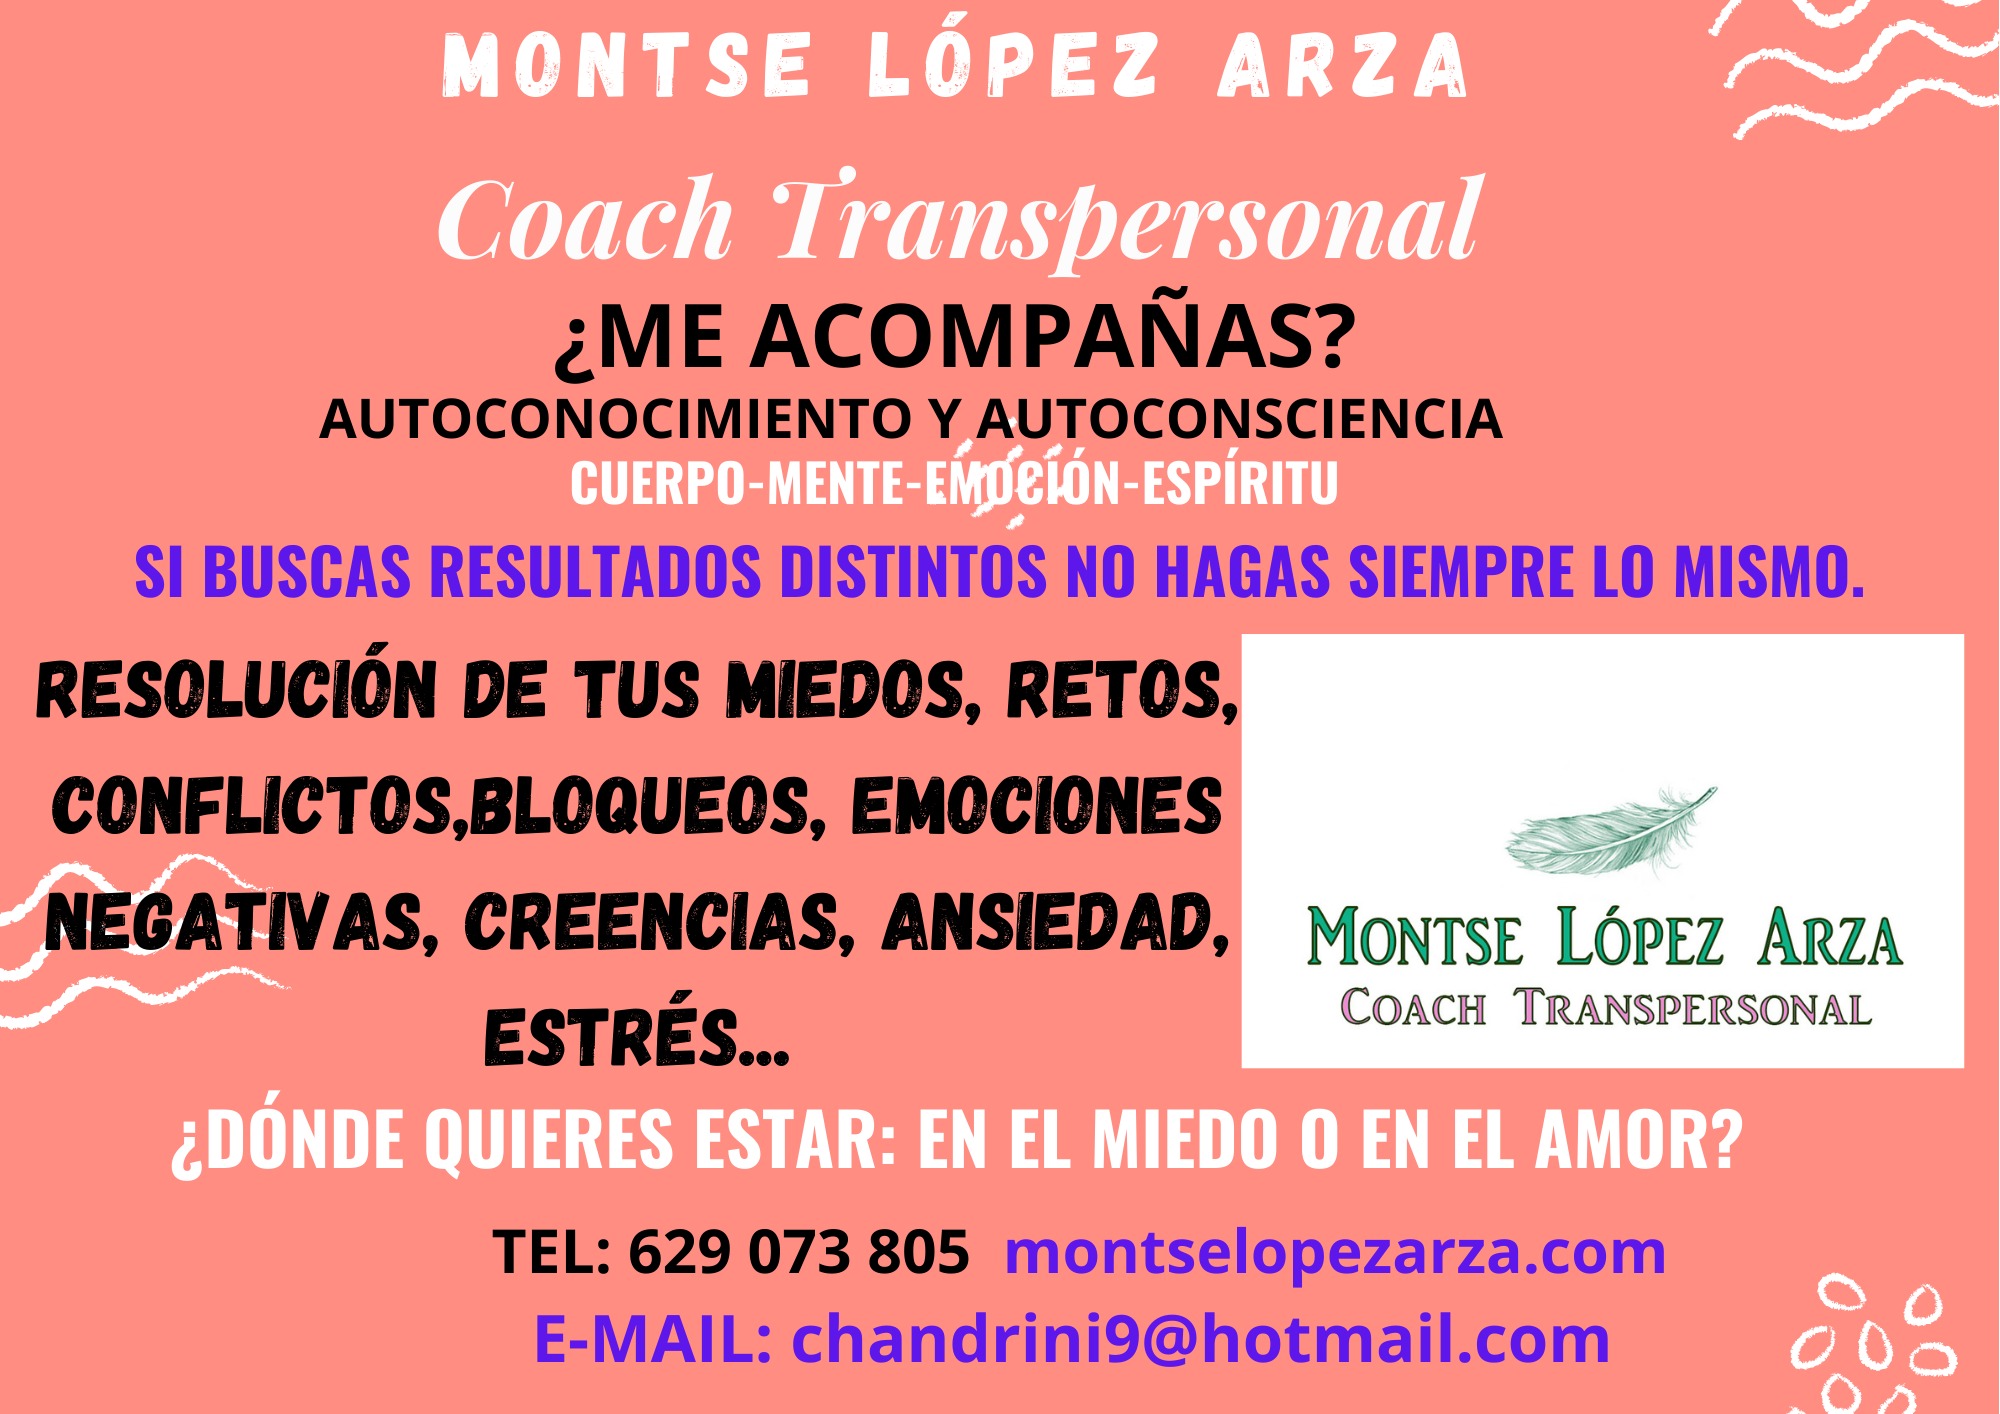 Montserrat  López Arza, Coach Transpersonal, Terapeuta Holística e Hipnoterapeuta en Valladolid. Valladolid